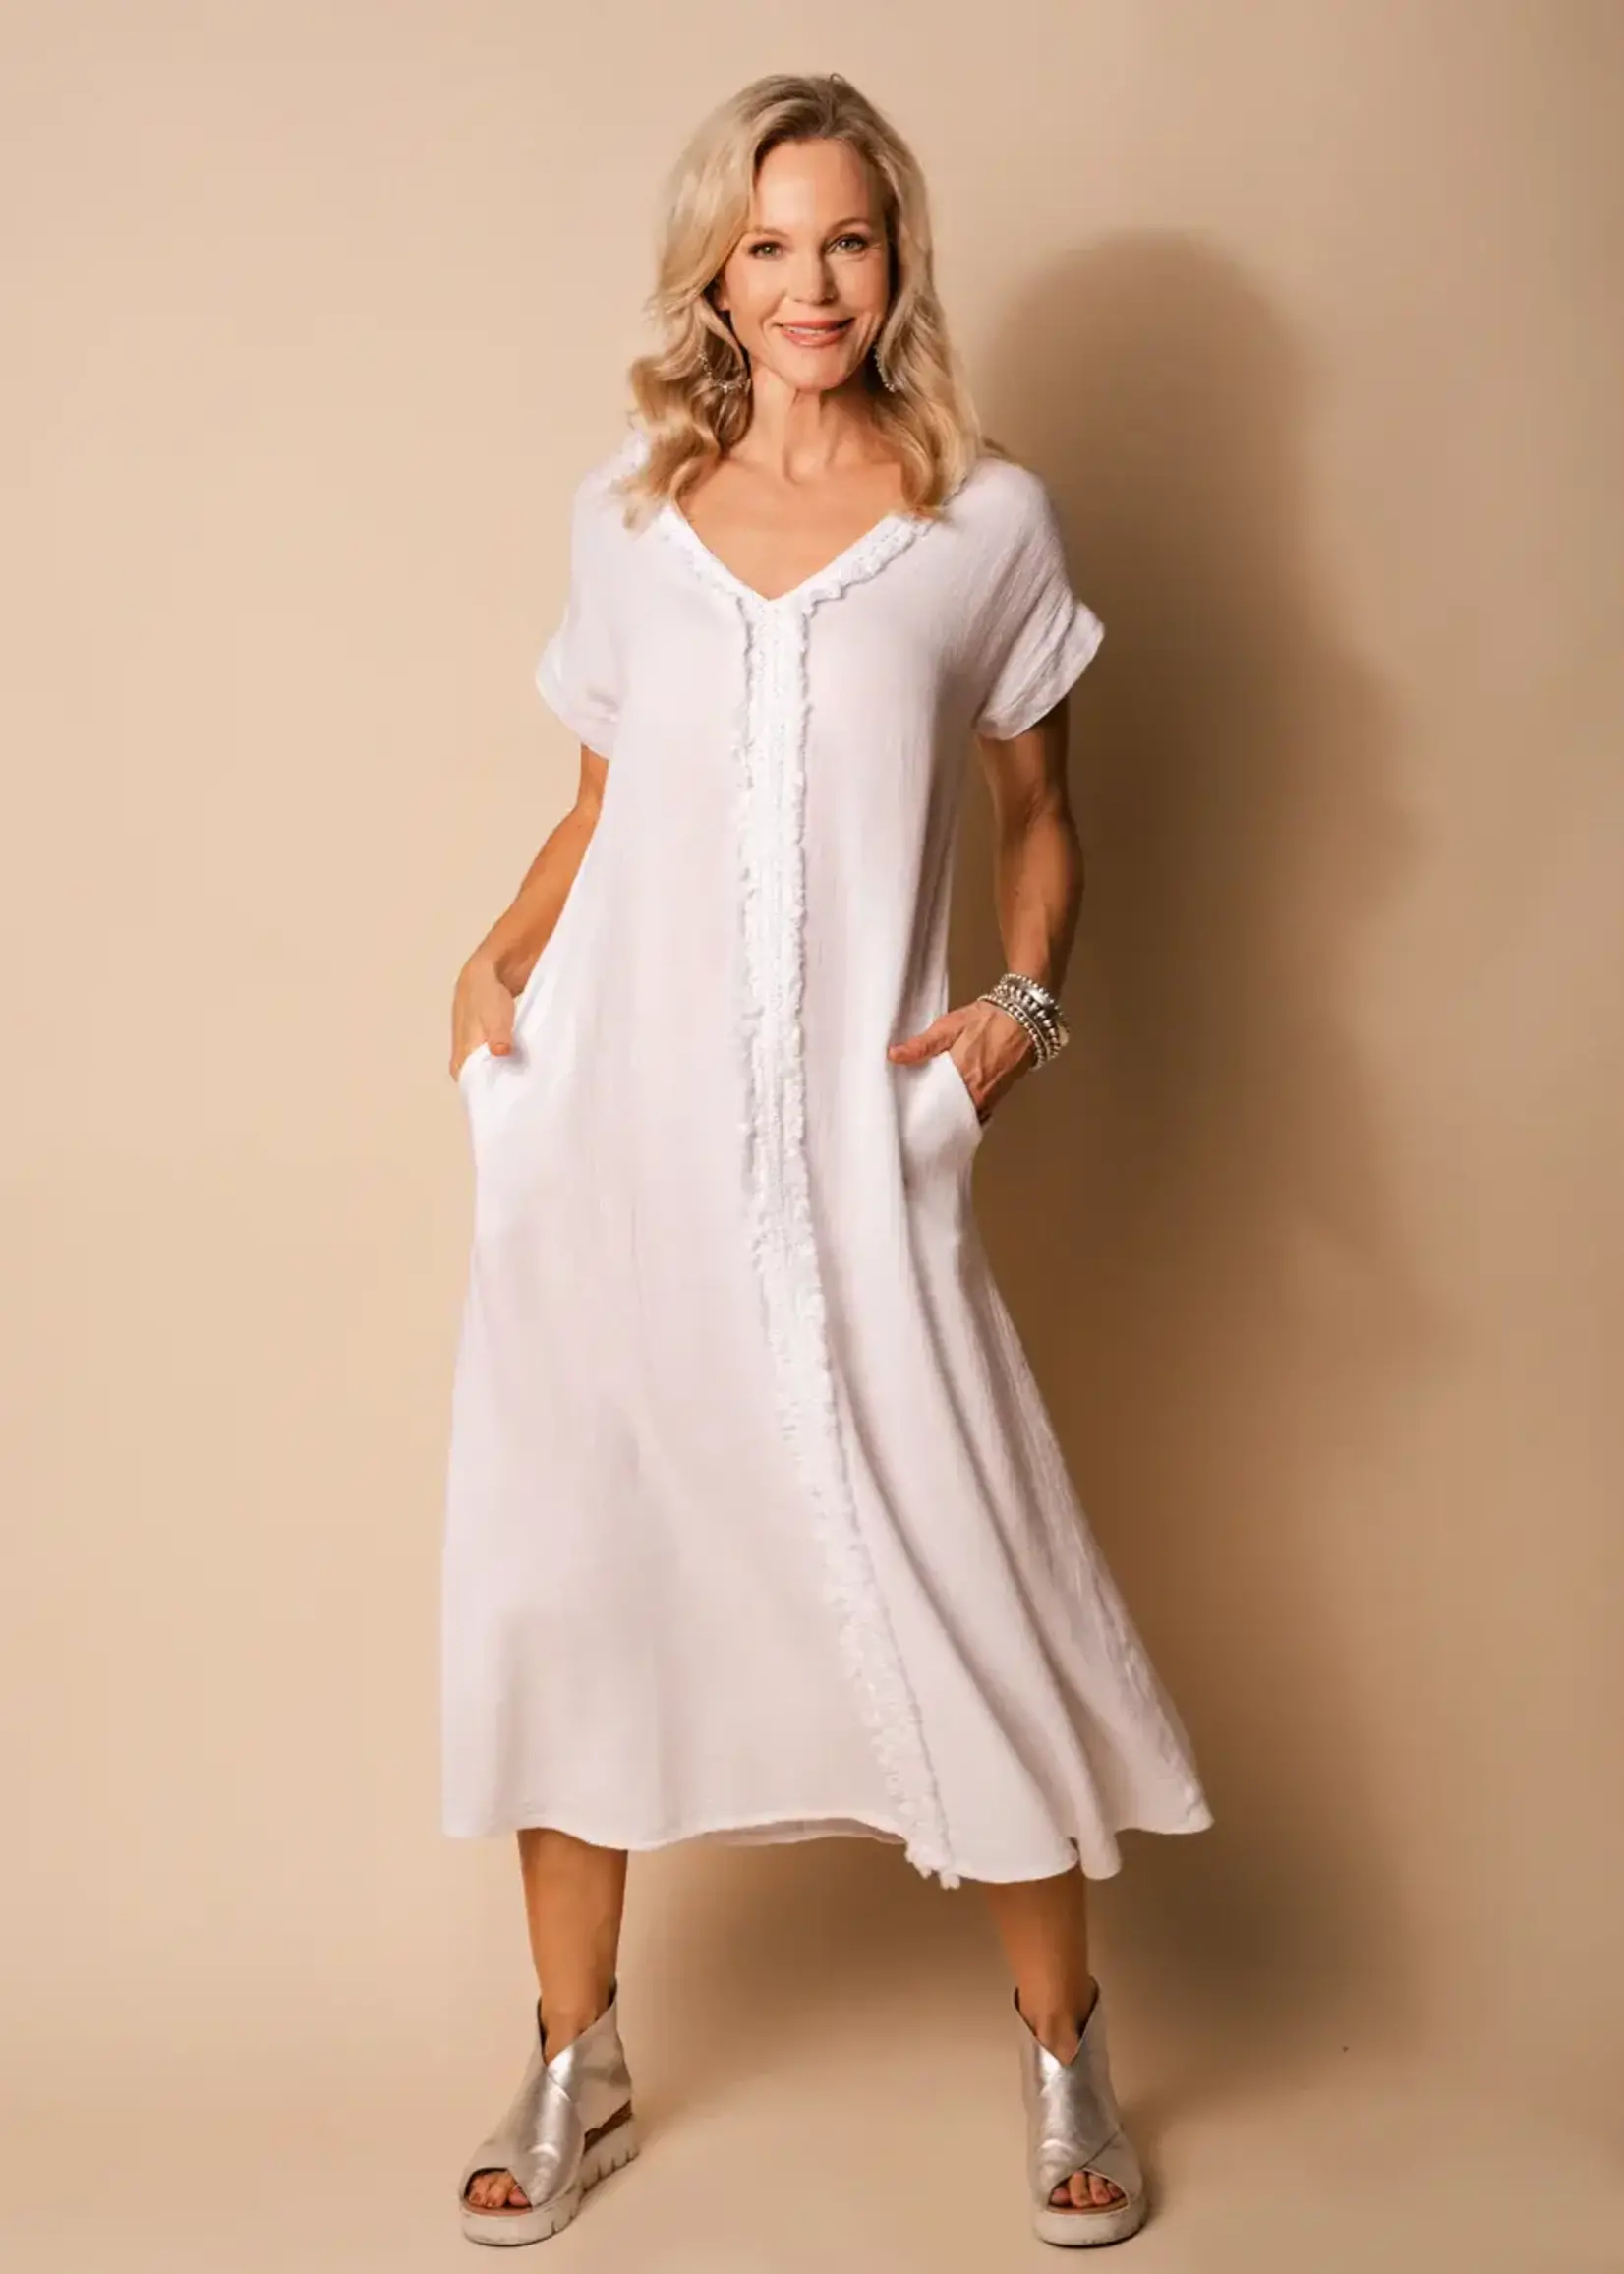 Imagine Fashion White Kaidi Linen Dress